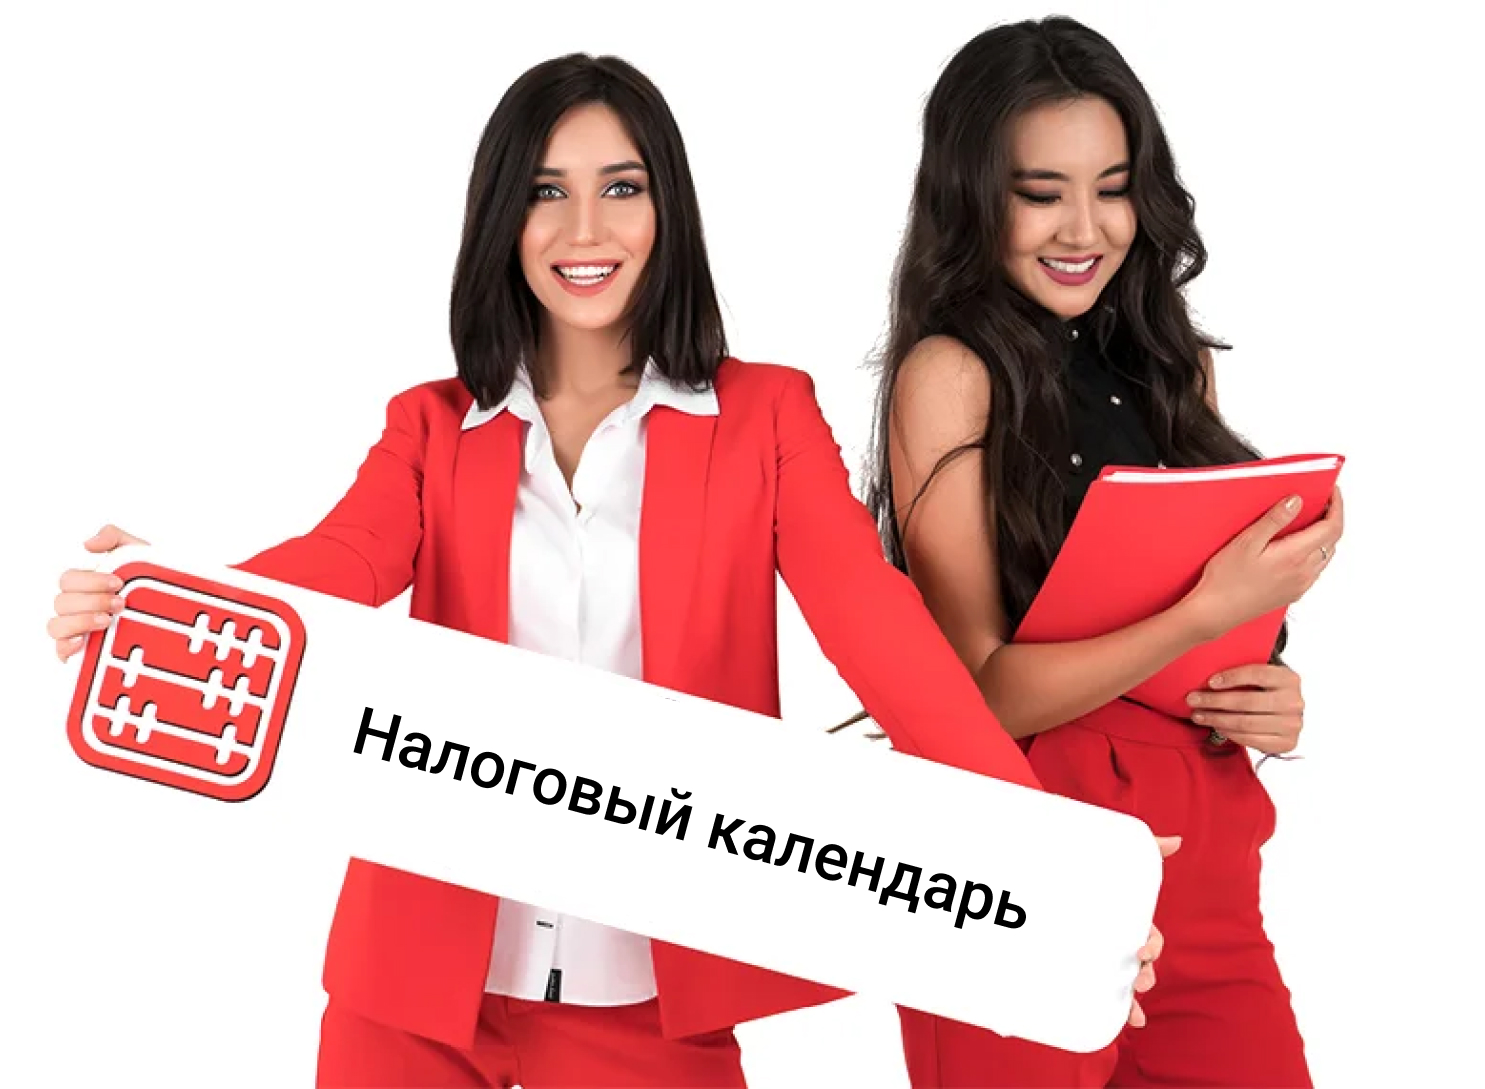 Две улыбающиеся девушки в красной одежде. Девушка слева смотрит прямо и держит баннер, с надписью "Налоговый календарь". Девушка справа смотрит вниз и держит в руках красную папку